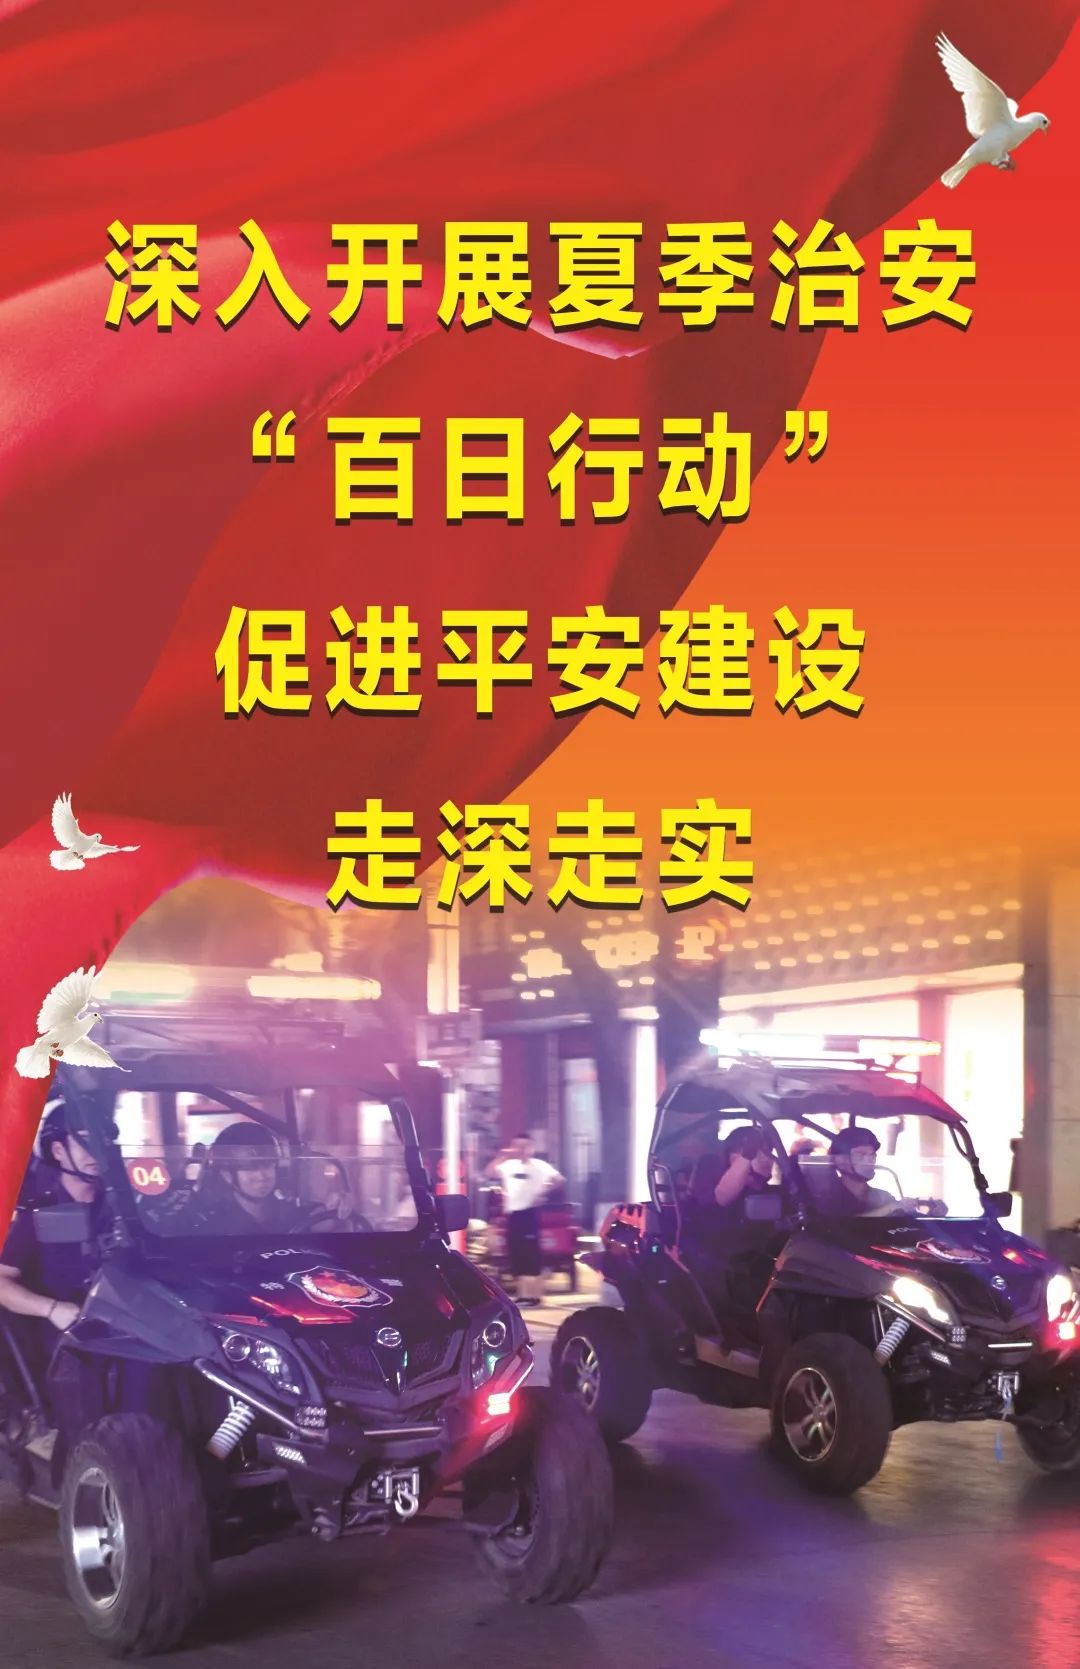 【百日行动】澄城公安主题海报,给你满满安全感